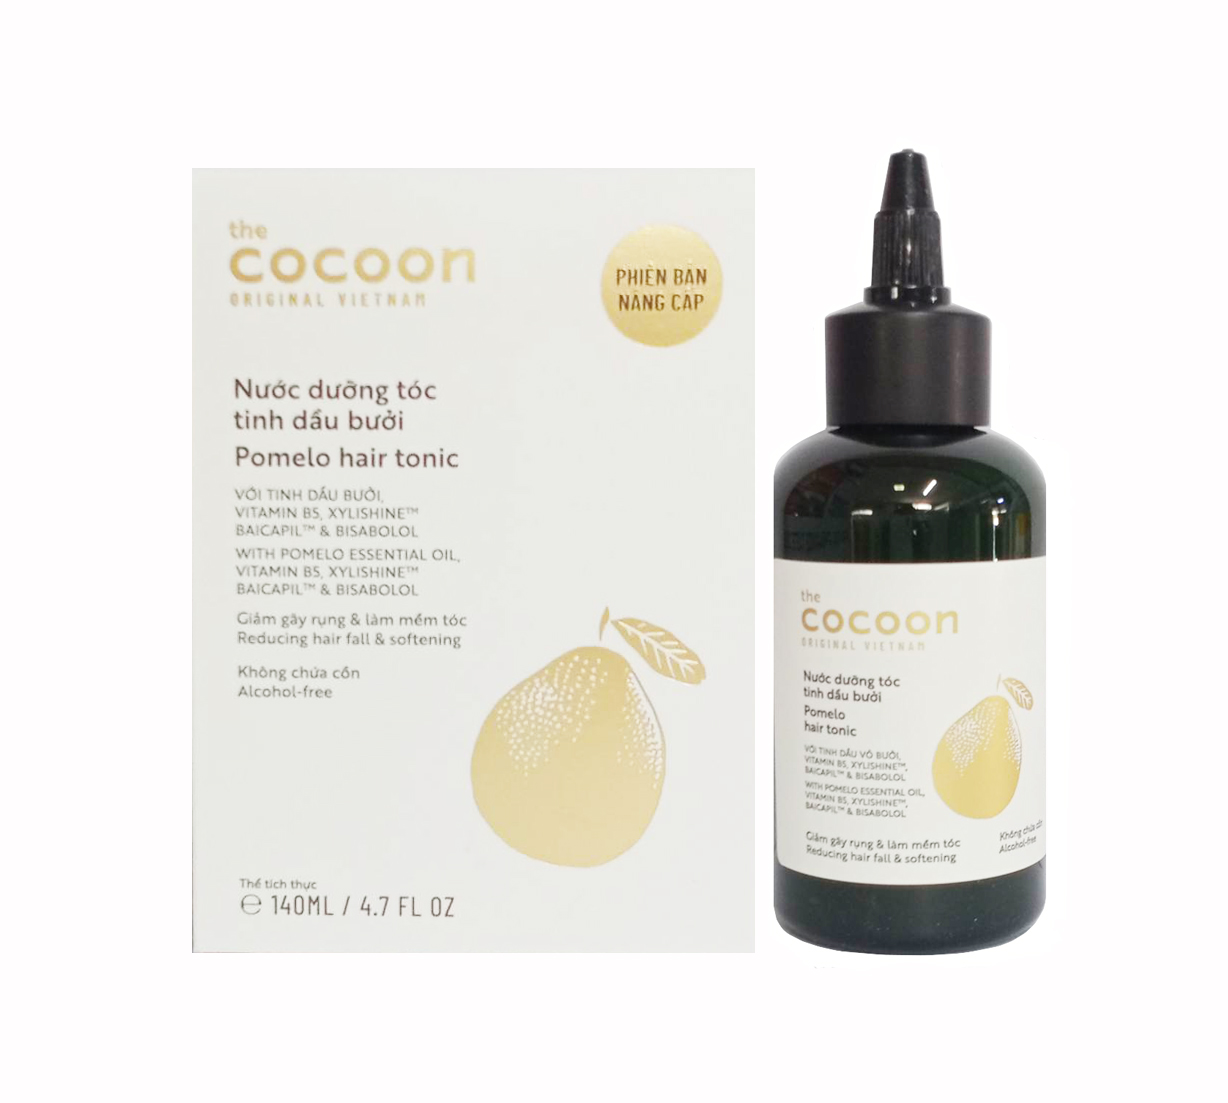 Nước dưỡng tóc tinh dầu bưởi Cocoon 140ml giảm gãy rụng